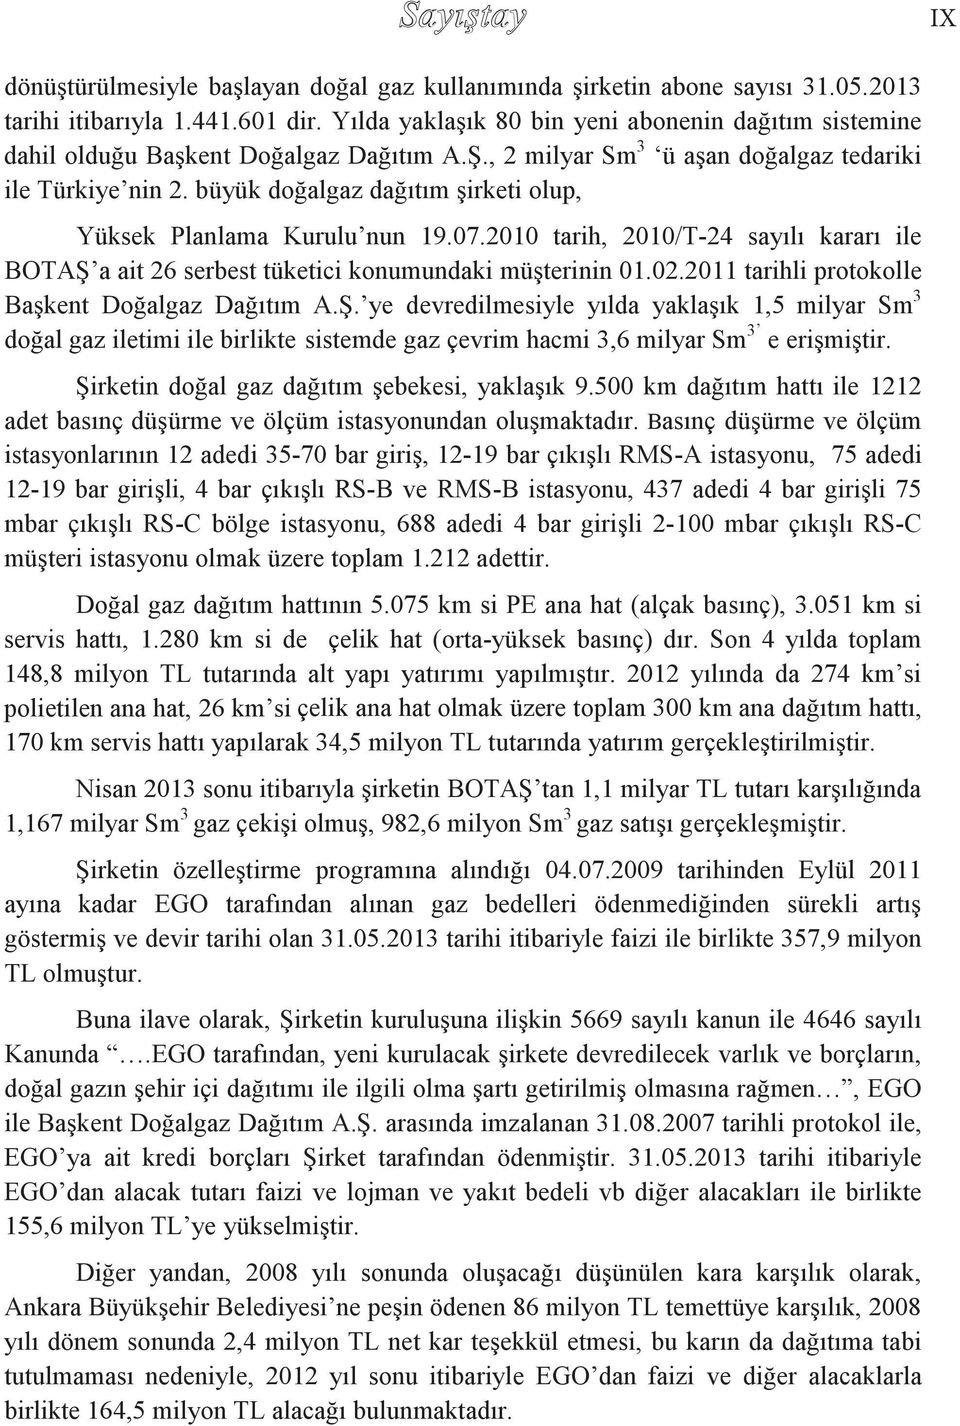 büyük doğalgaz dağıtım şirketi olup, Yüksek Planlama Kurulu nun 19.07.2010 tarih, 2010/T-24 sayılı kararı ile BOTAŞ a ait 26 serbest tüketici konumundaki müşterinin 01.02.